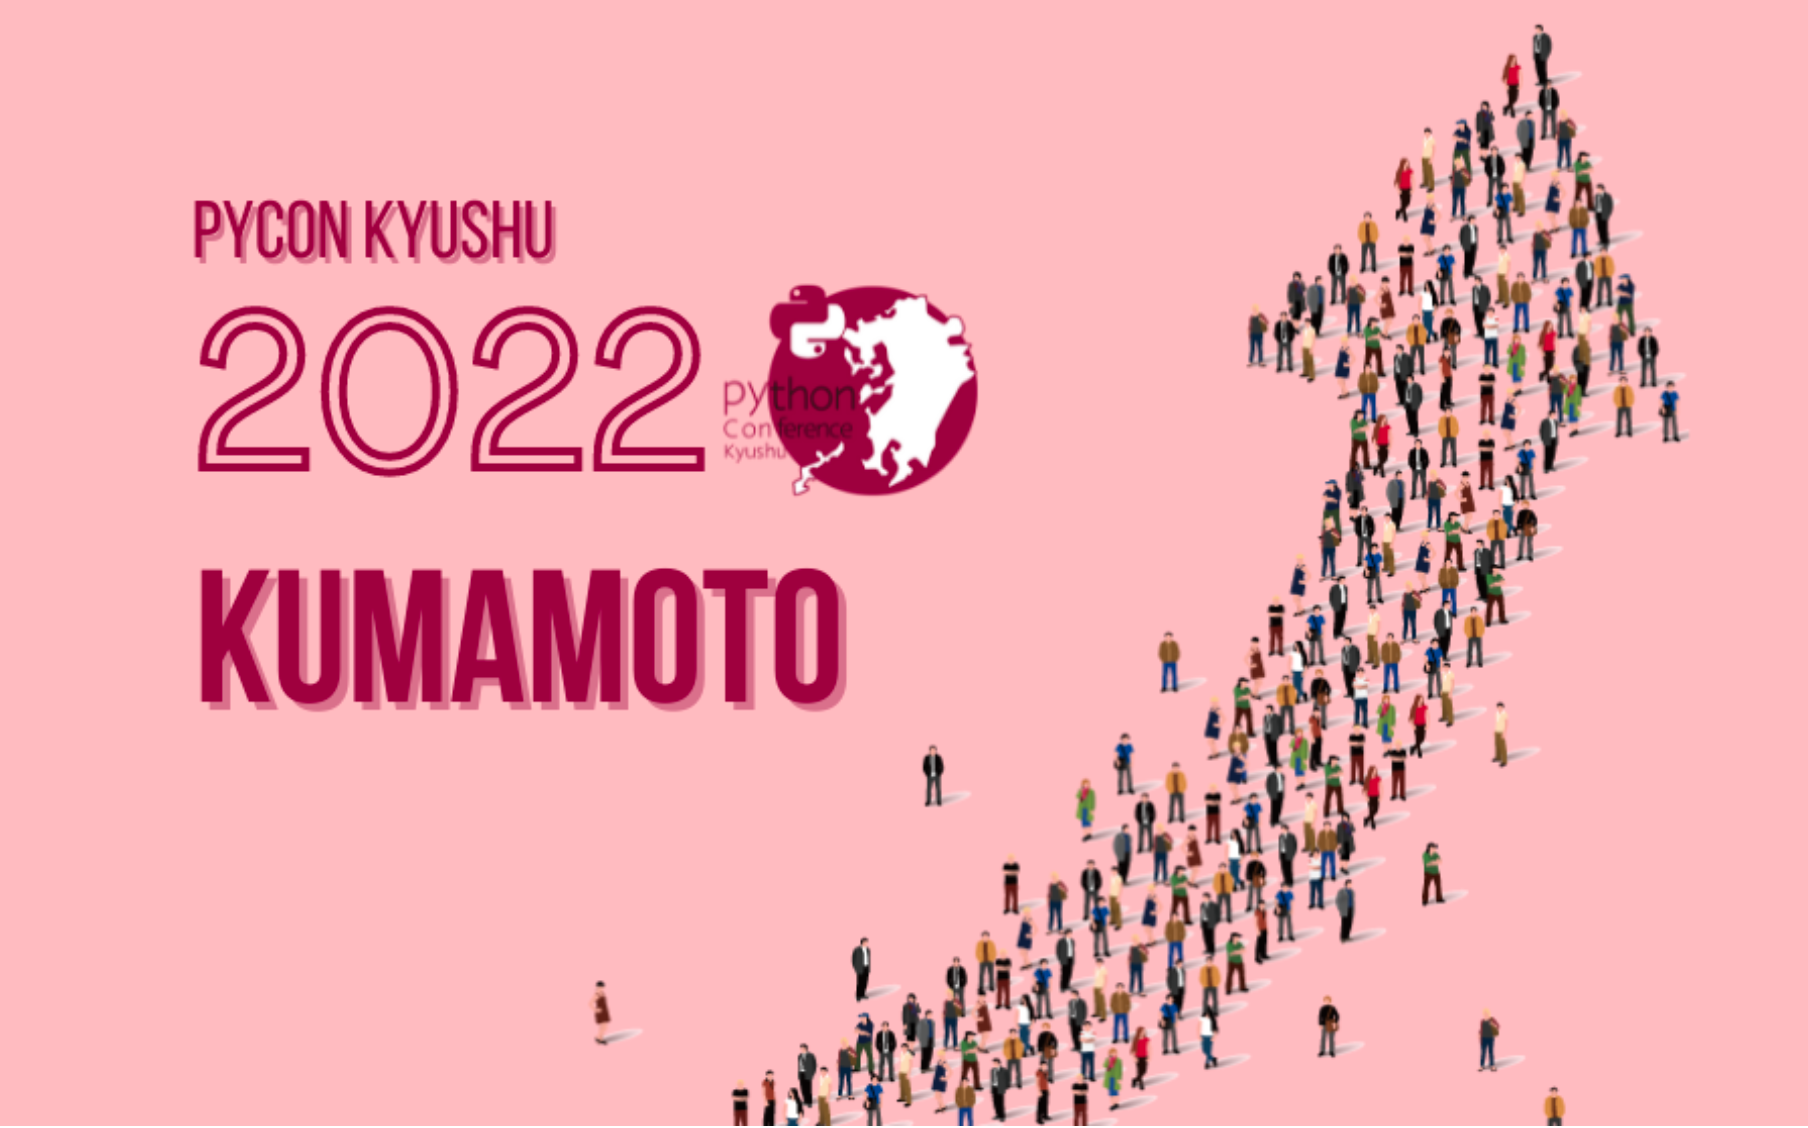 pycon kyushu 2022 kumamoto